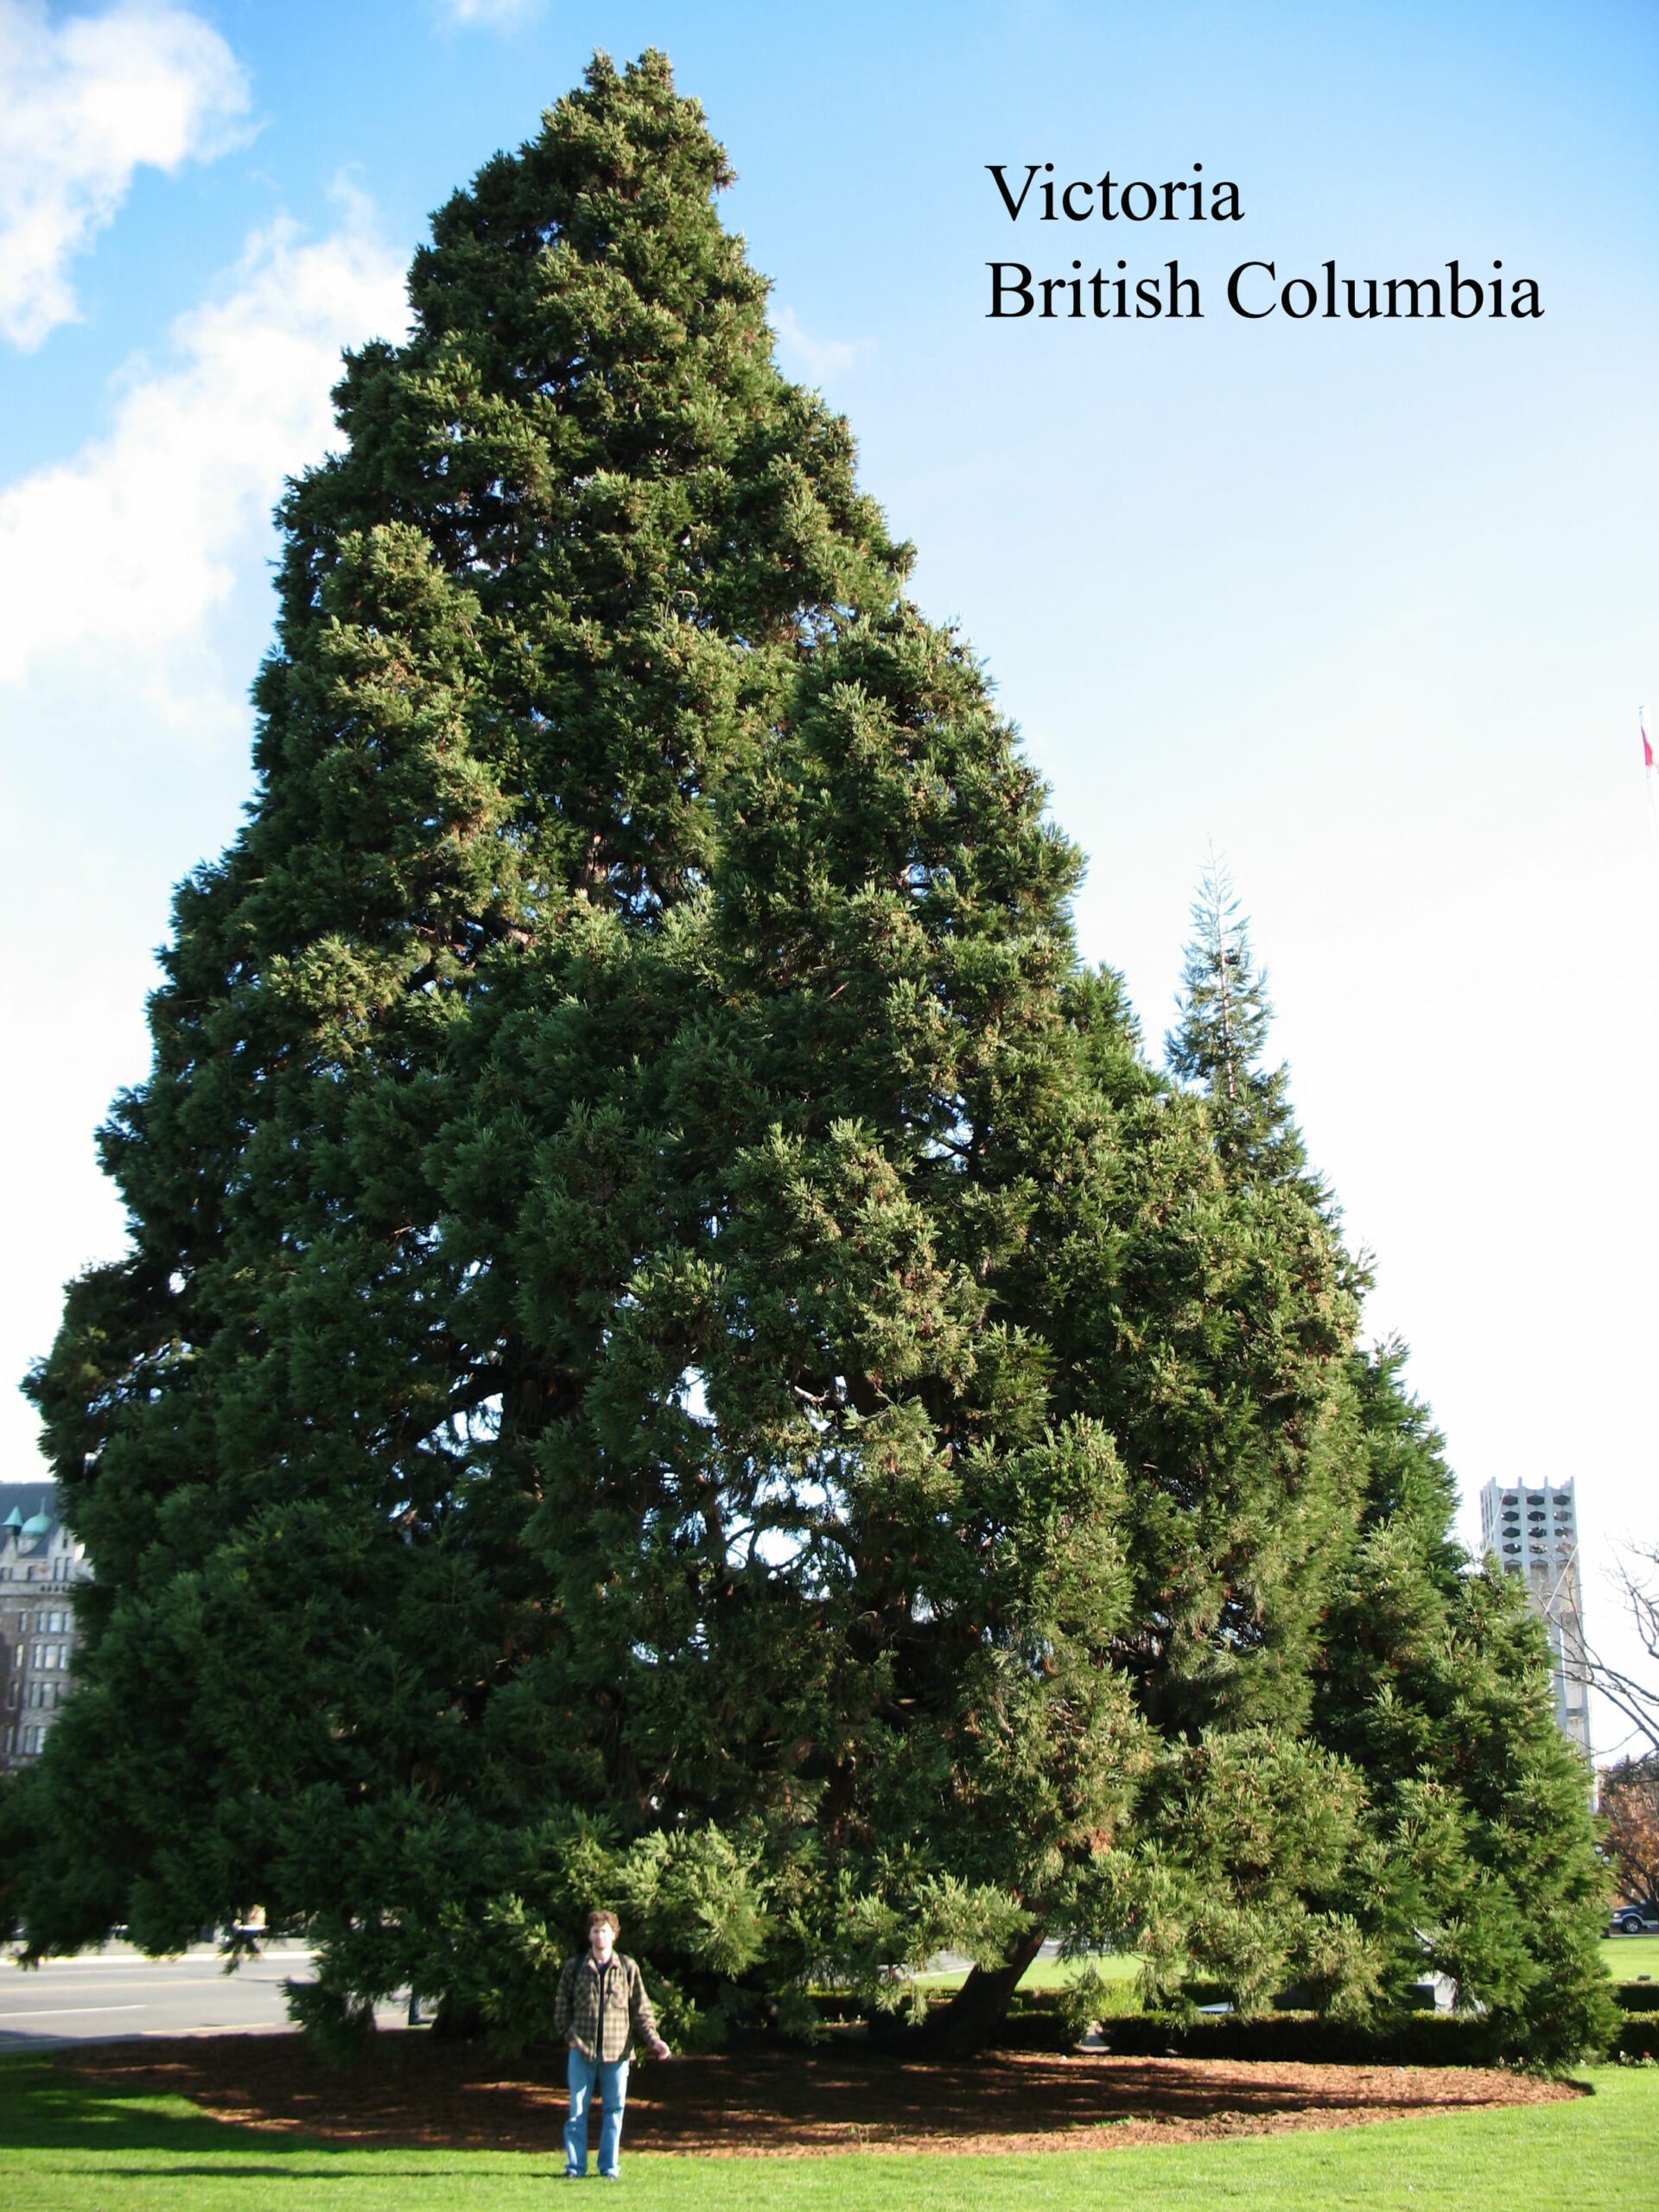 Victoria British Columbia giant sequoia